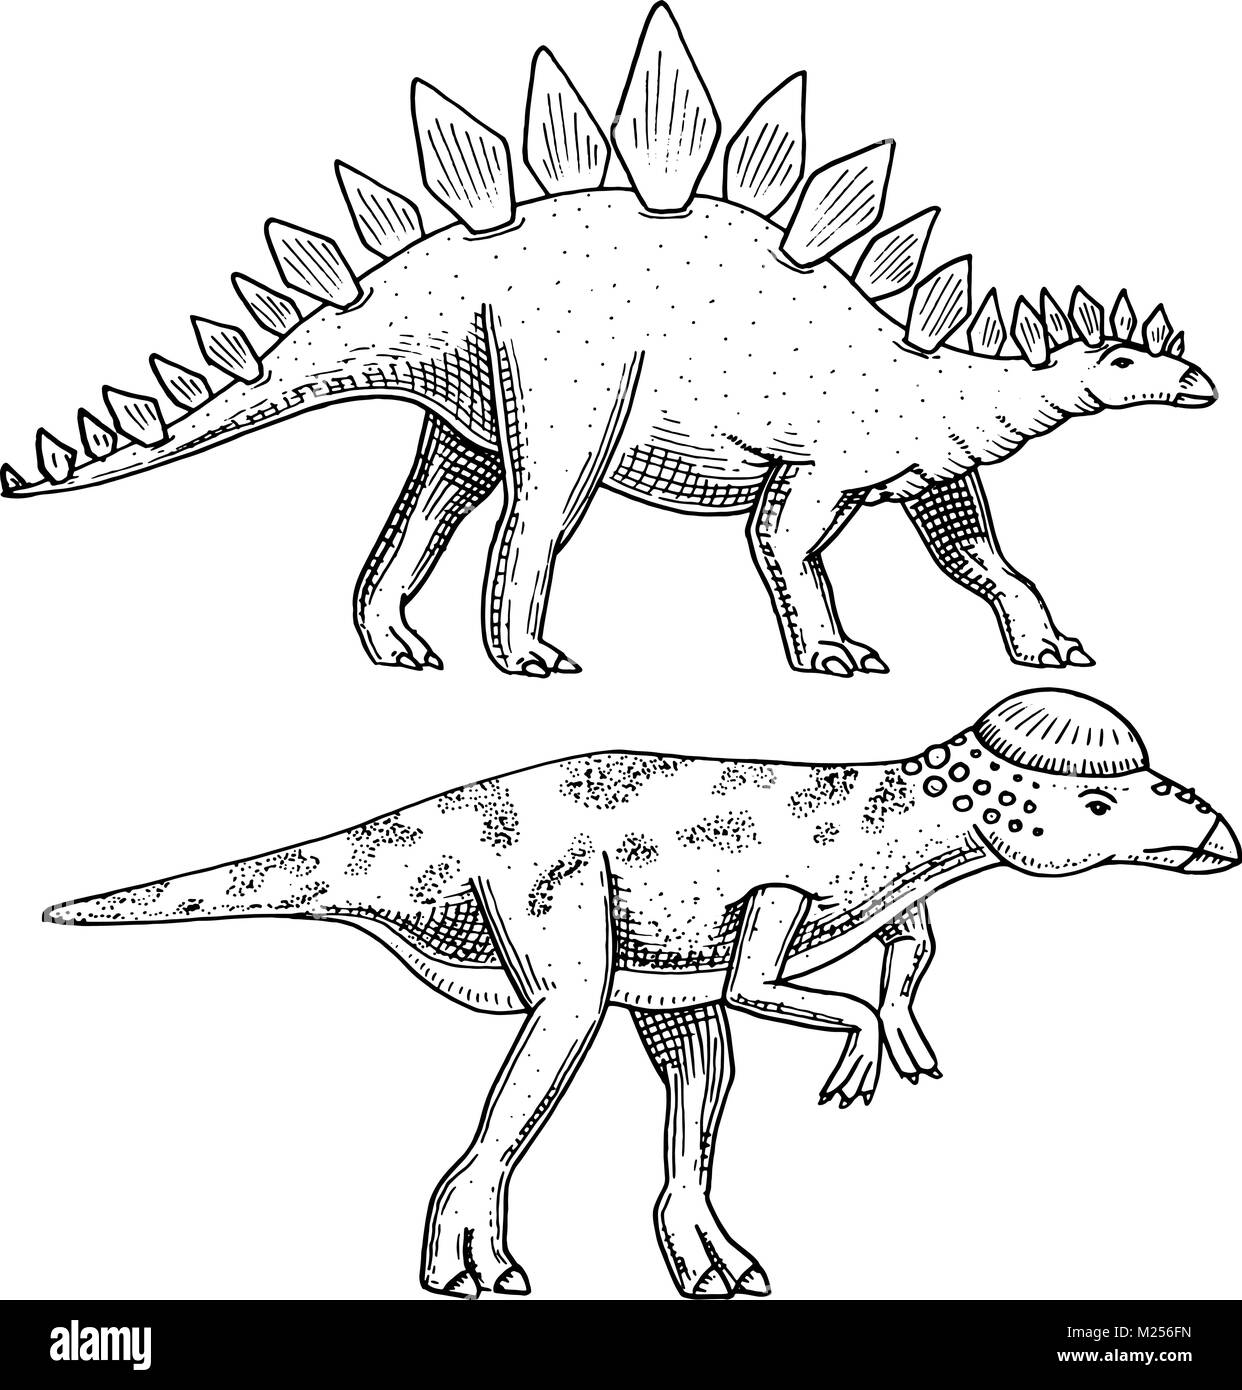 Dinosaurier Stegosaurus, Pachycephalosaurus, Lexovisaurus, Skelette, Fossilien. Prähistorische Reptilien, Tier graviert Hand gezeichnet Vektor. Stock Vektor